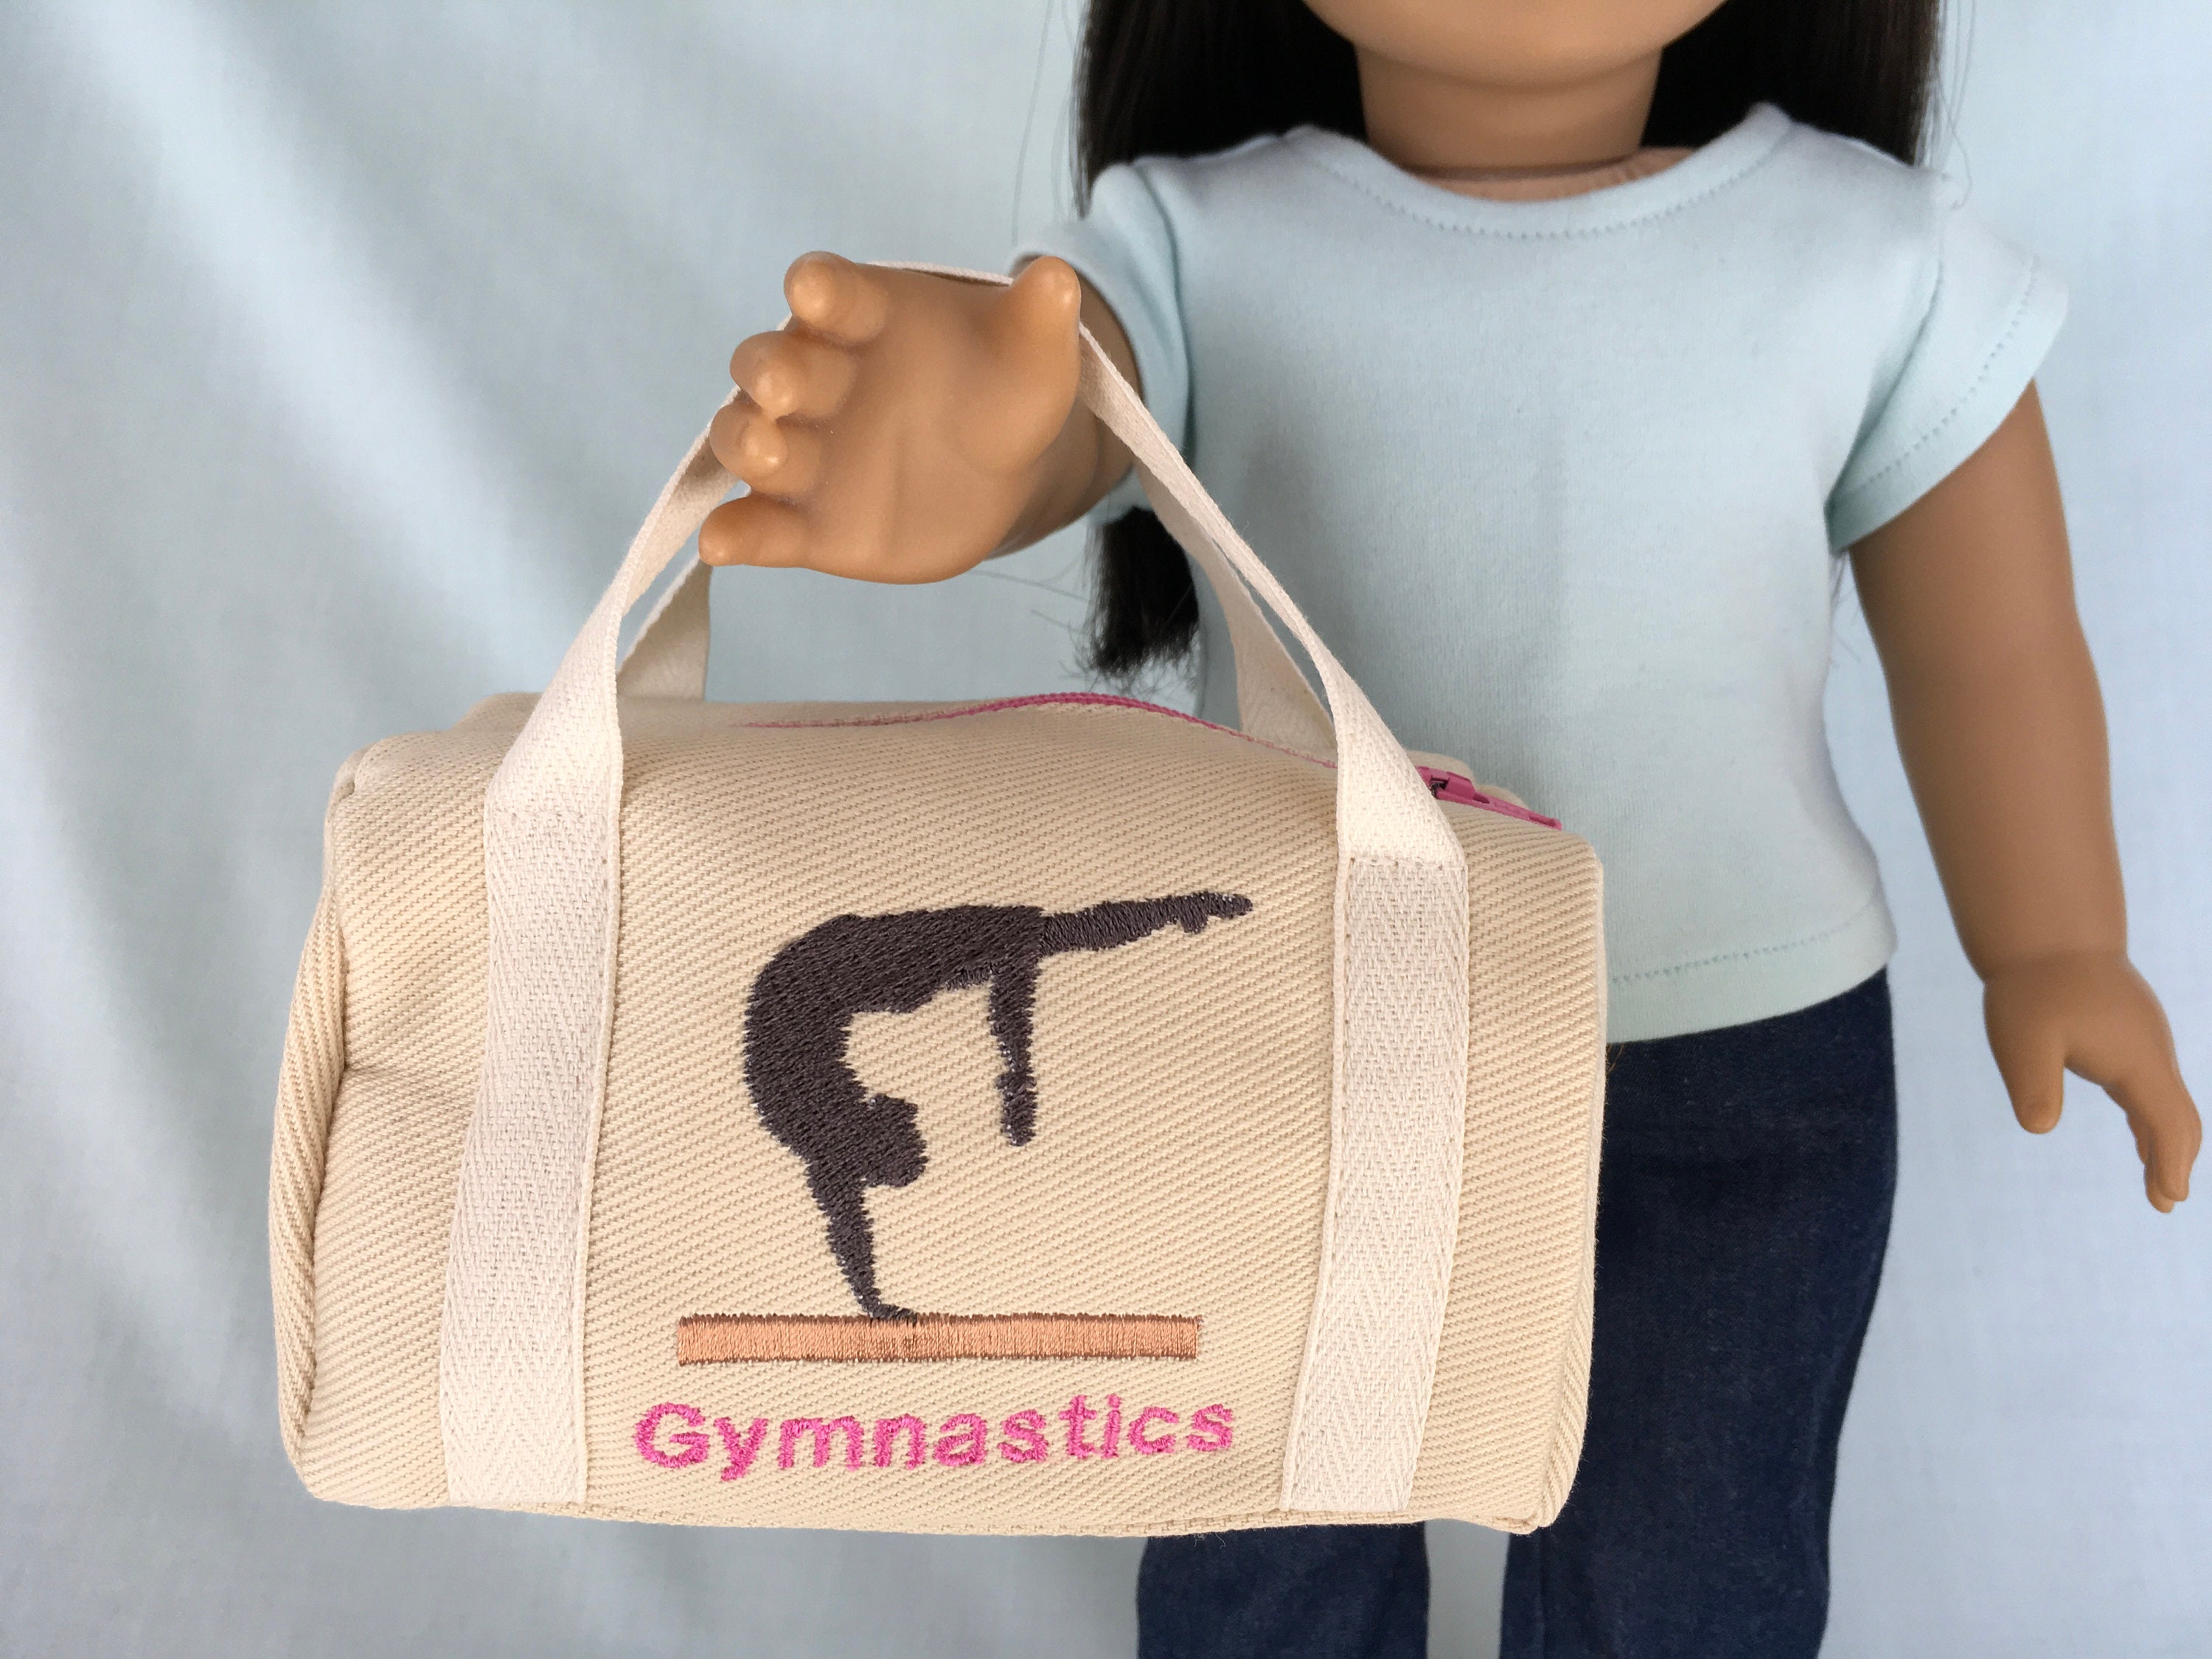 Gymnastics Duffle Bag for American Girl/18 Inch Doll 